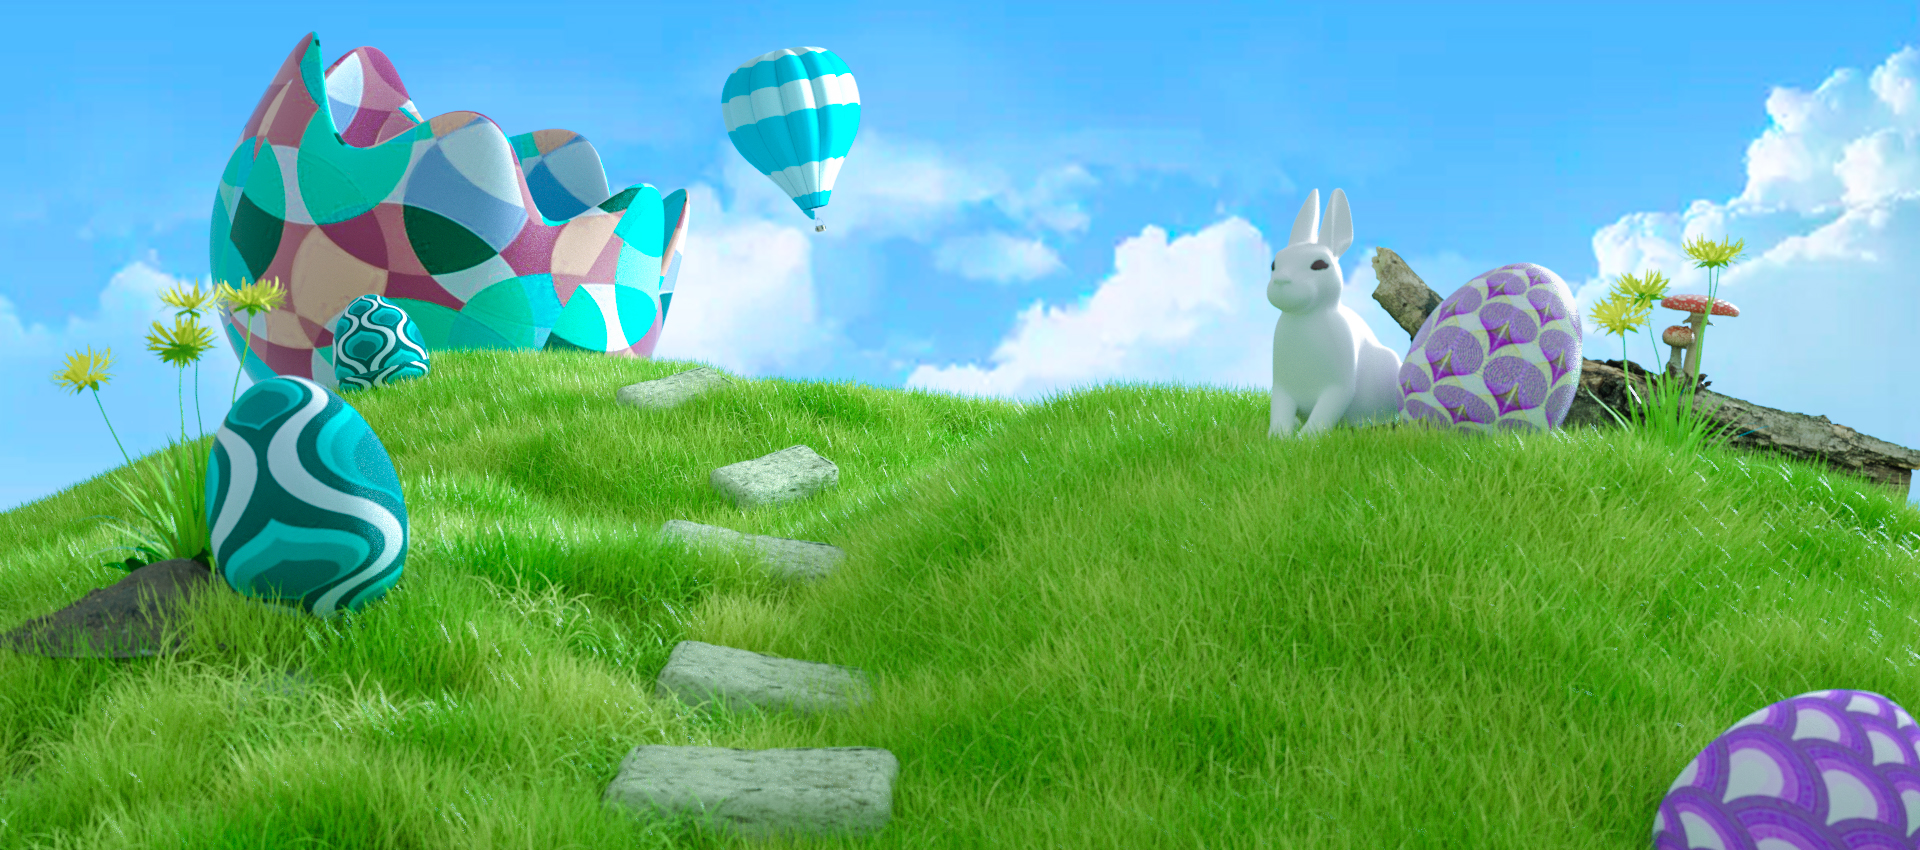 C4D模型户外草地节日彩蛋天空兔子C4D模型户外草地节日彩蛋天空兔子.jpg